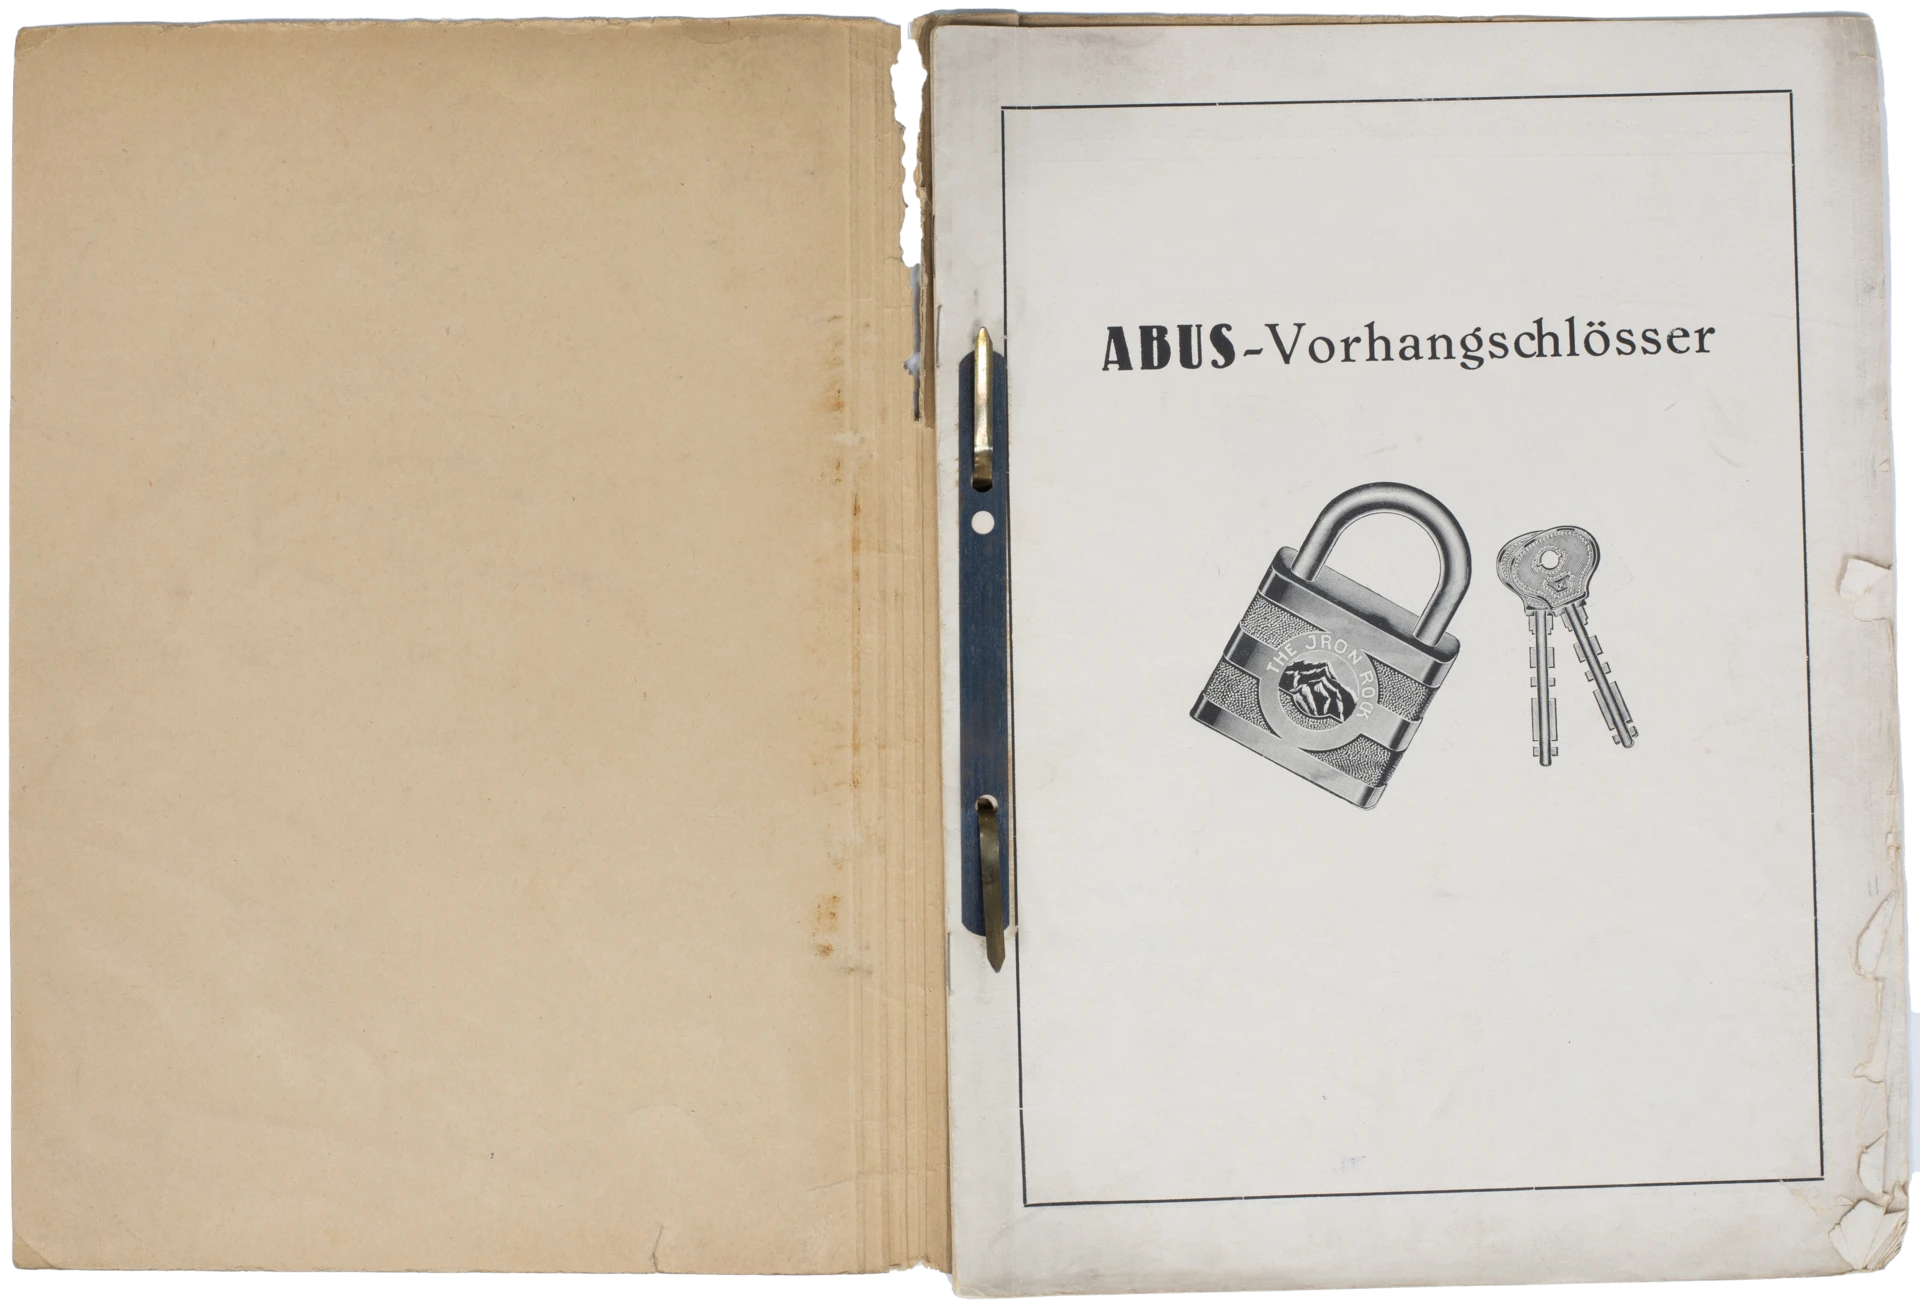 En öppen mapp med ett försättsblad som visar ett hänglås och ett par nycklar, med texten "ABUS-Vorhängeschlösser” (ABUS-hänglås) © ABUS